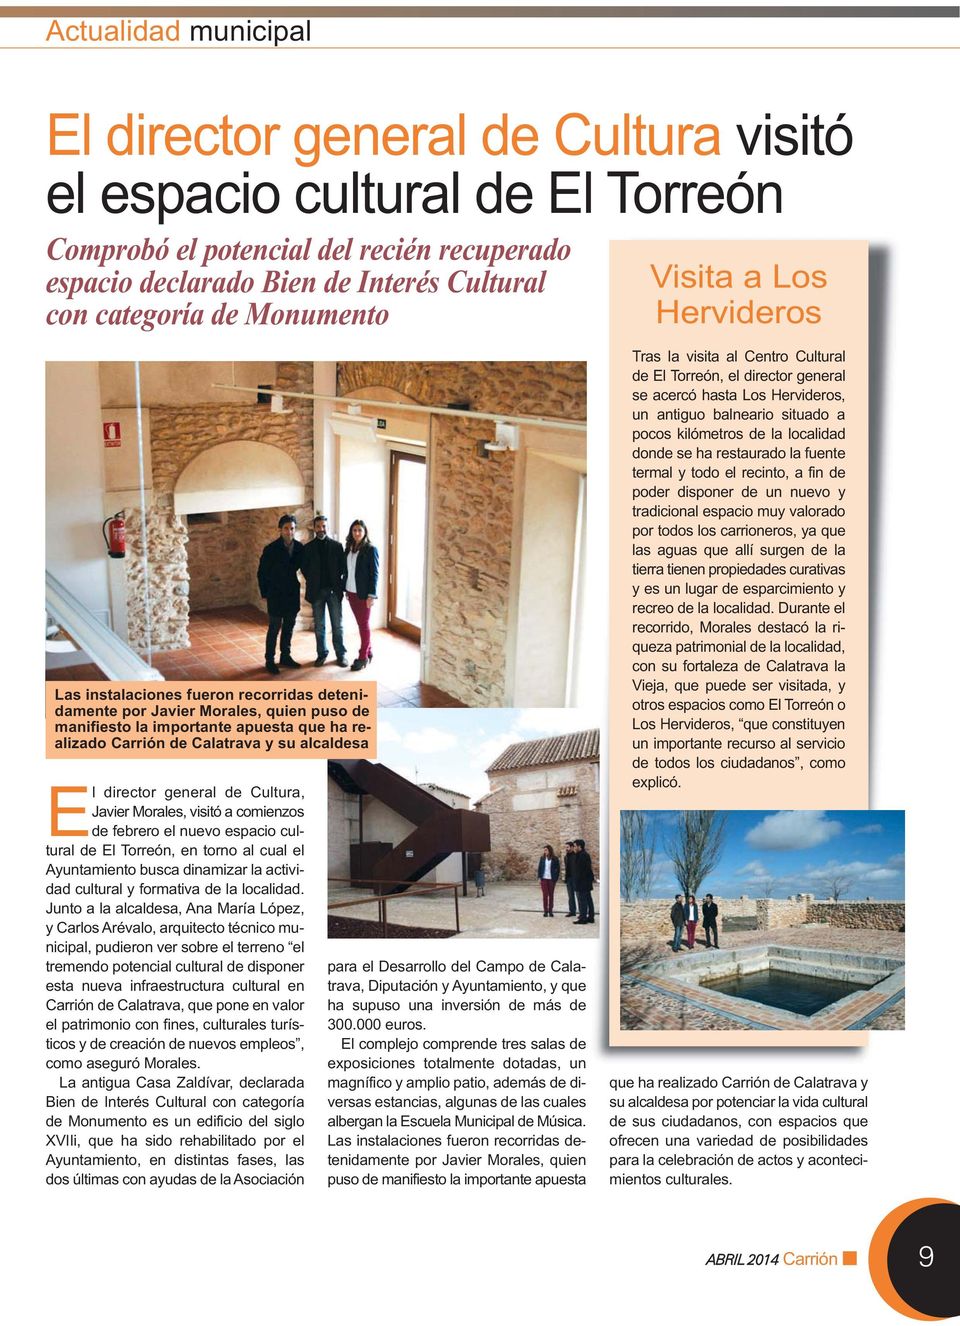 alcaldesa El director general de Cultura, Javier Morales, visitó a comienzos de febrero el nuevo espacio cultural de El Torreón, en torno al cual el Ayuntamiento busca dinamizar la actividad cultural